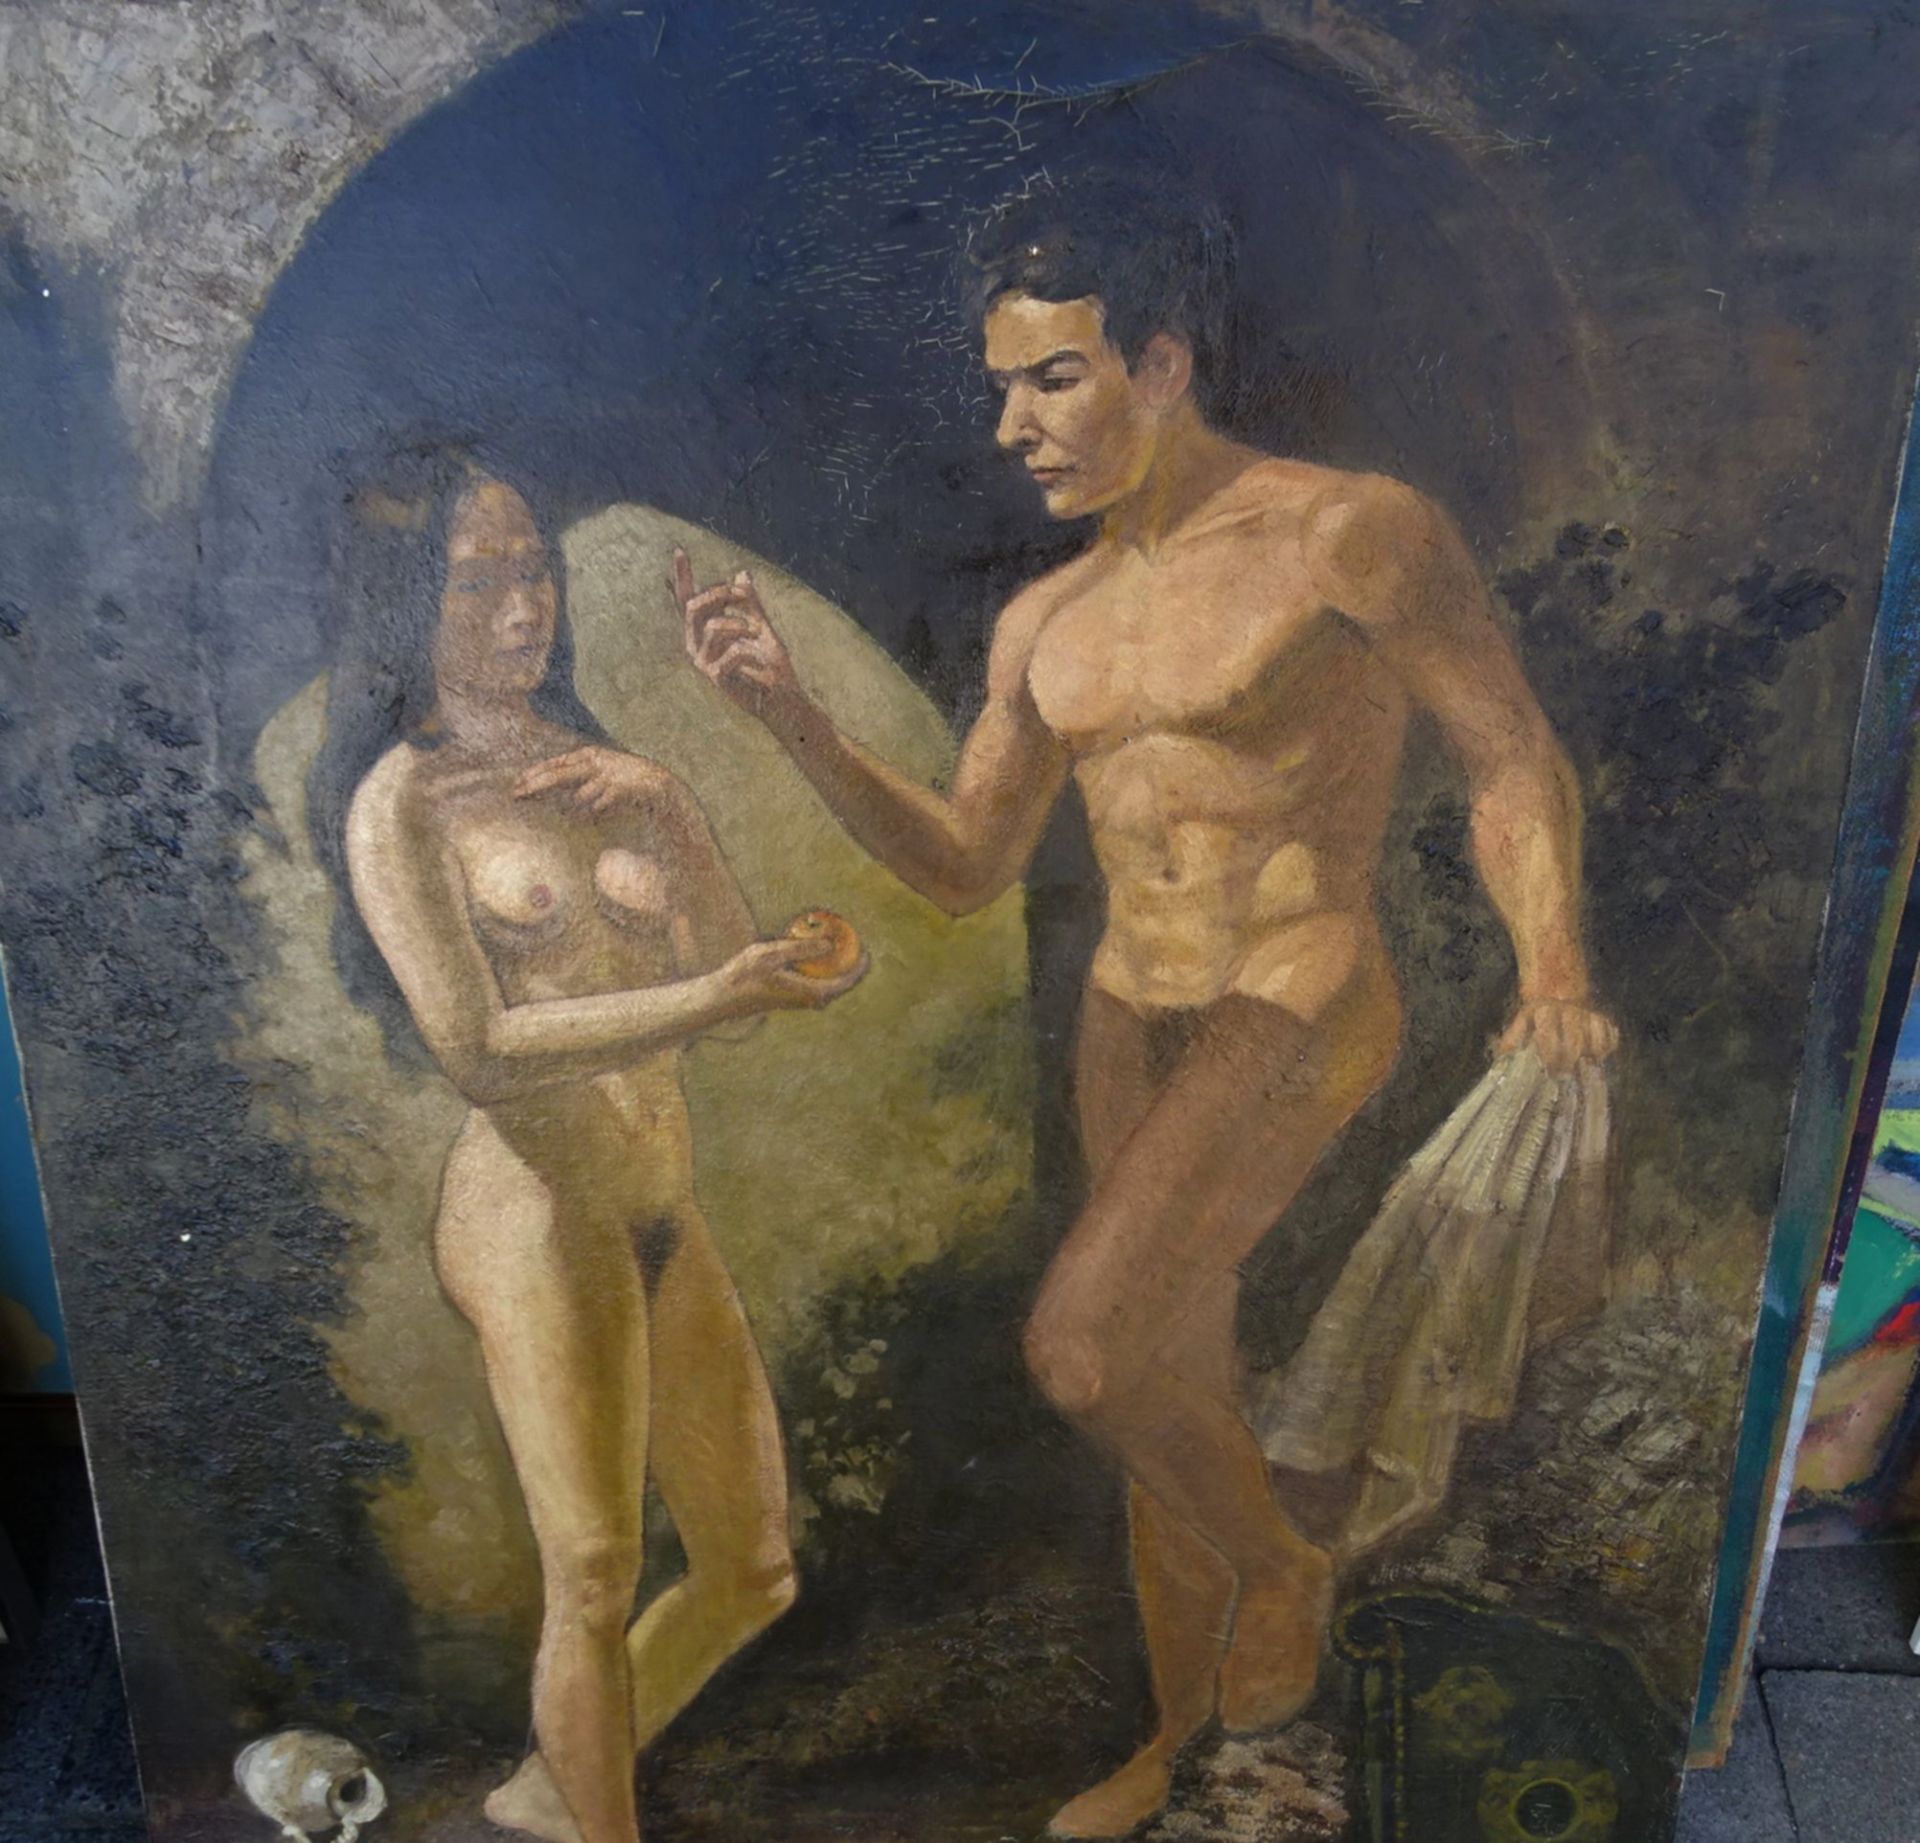 unleserlich signiert "Junges Paar", Öl/Leinen, 91x70 cm - Bild 2 aus 2